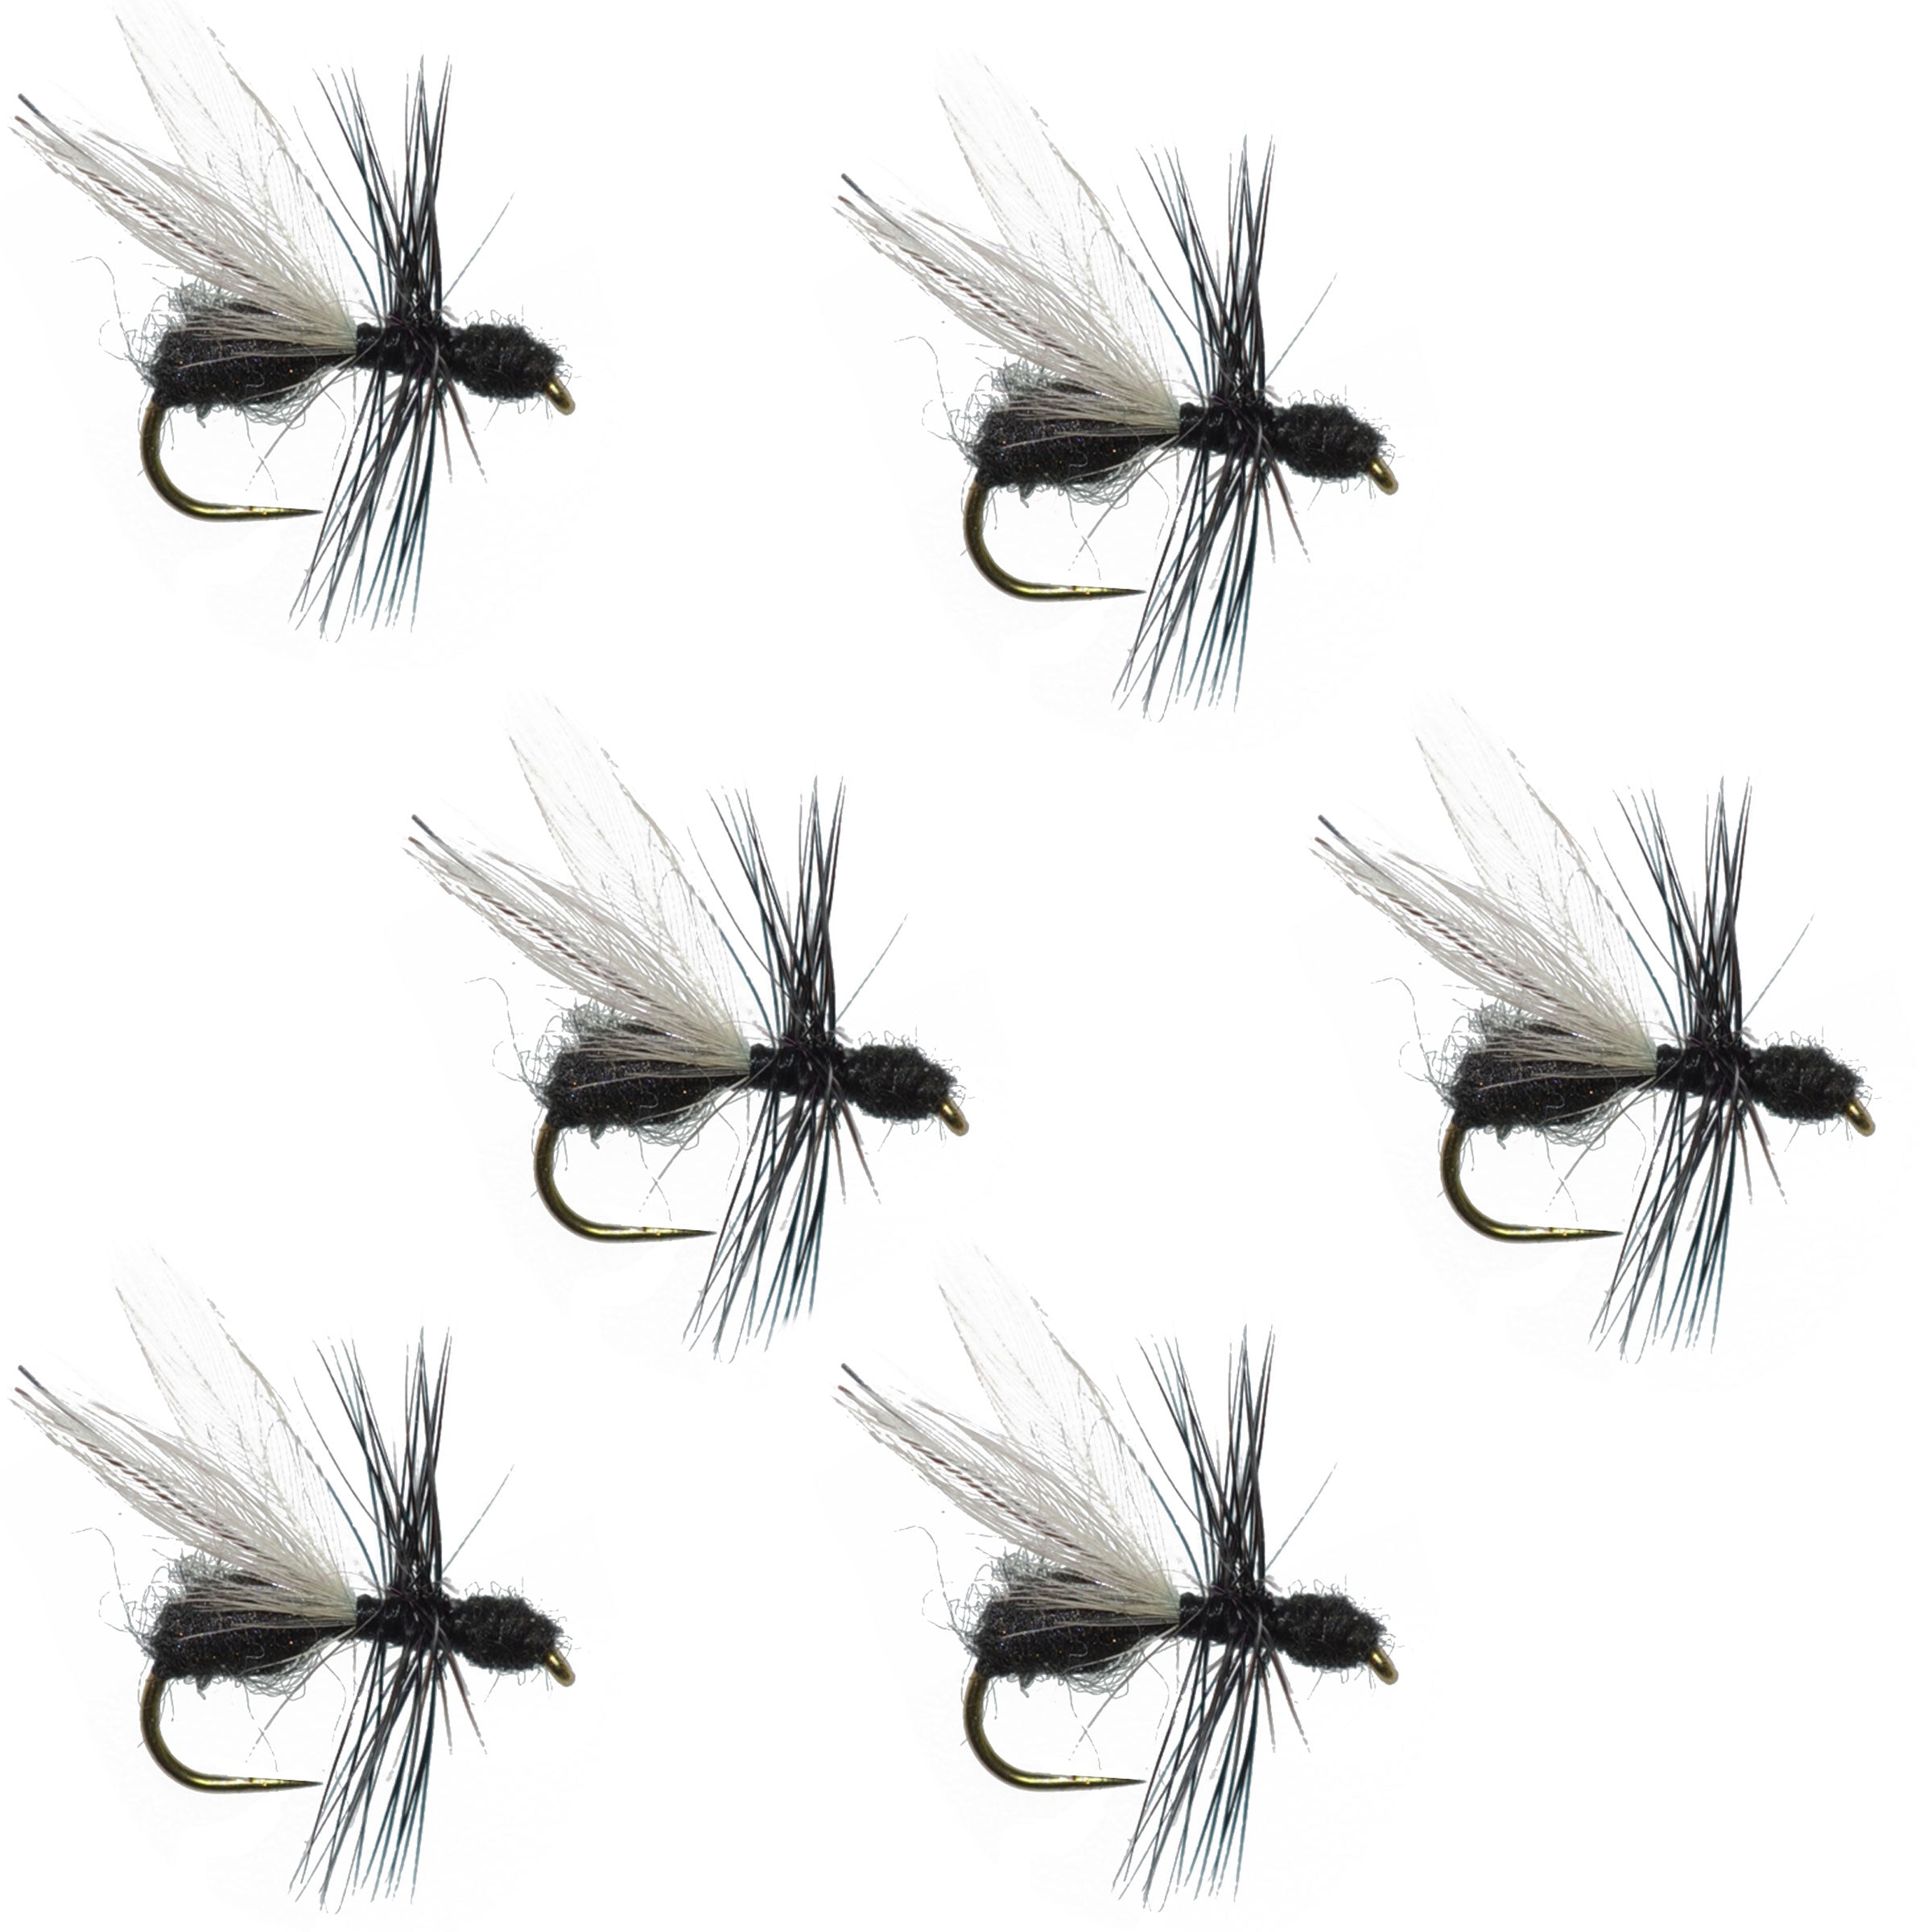 Moscas de pesca con mosca seca, 6 moscas, tamaño de anzuelo 14, hormiga voladora de piel negra sin púas, trucha terrestre